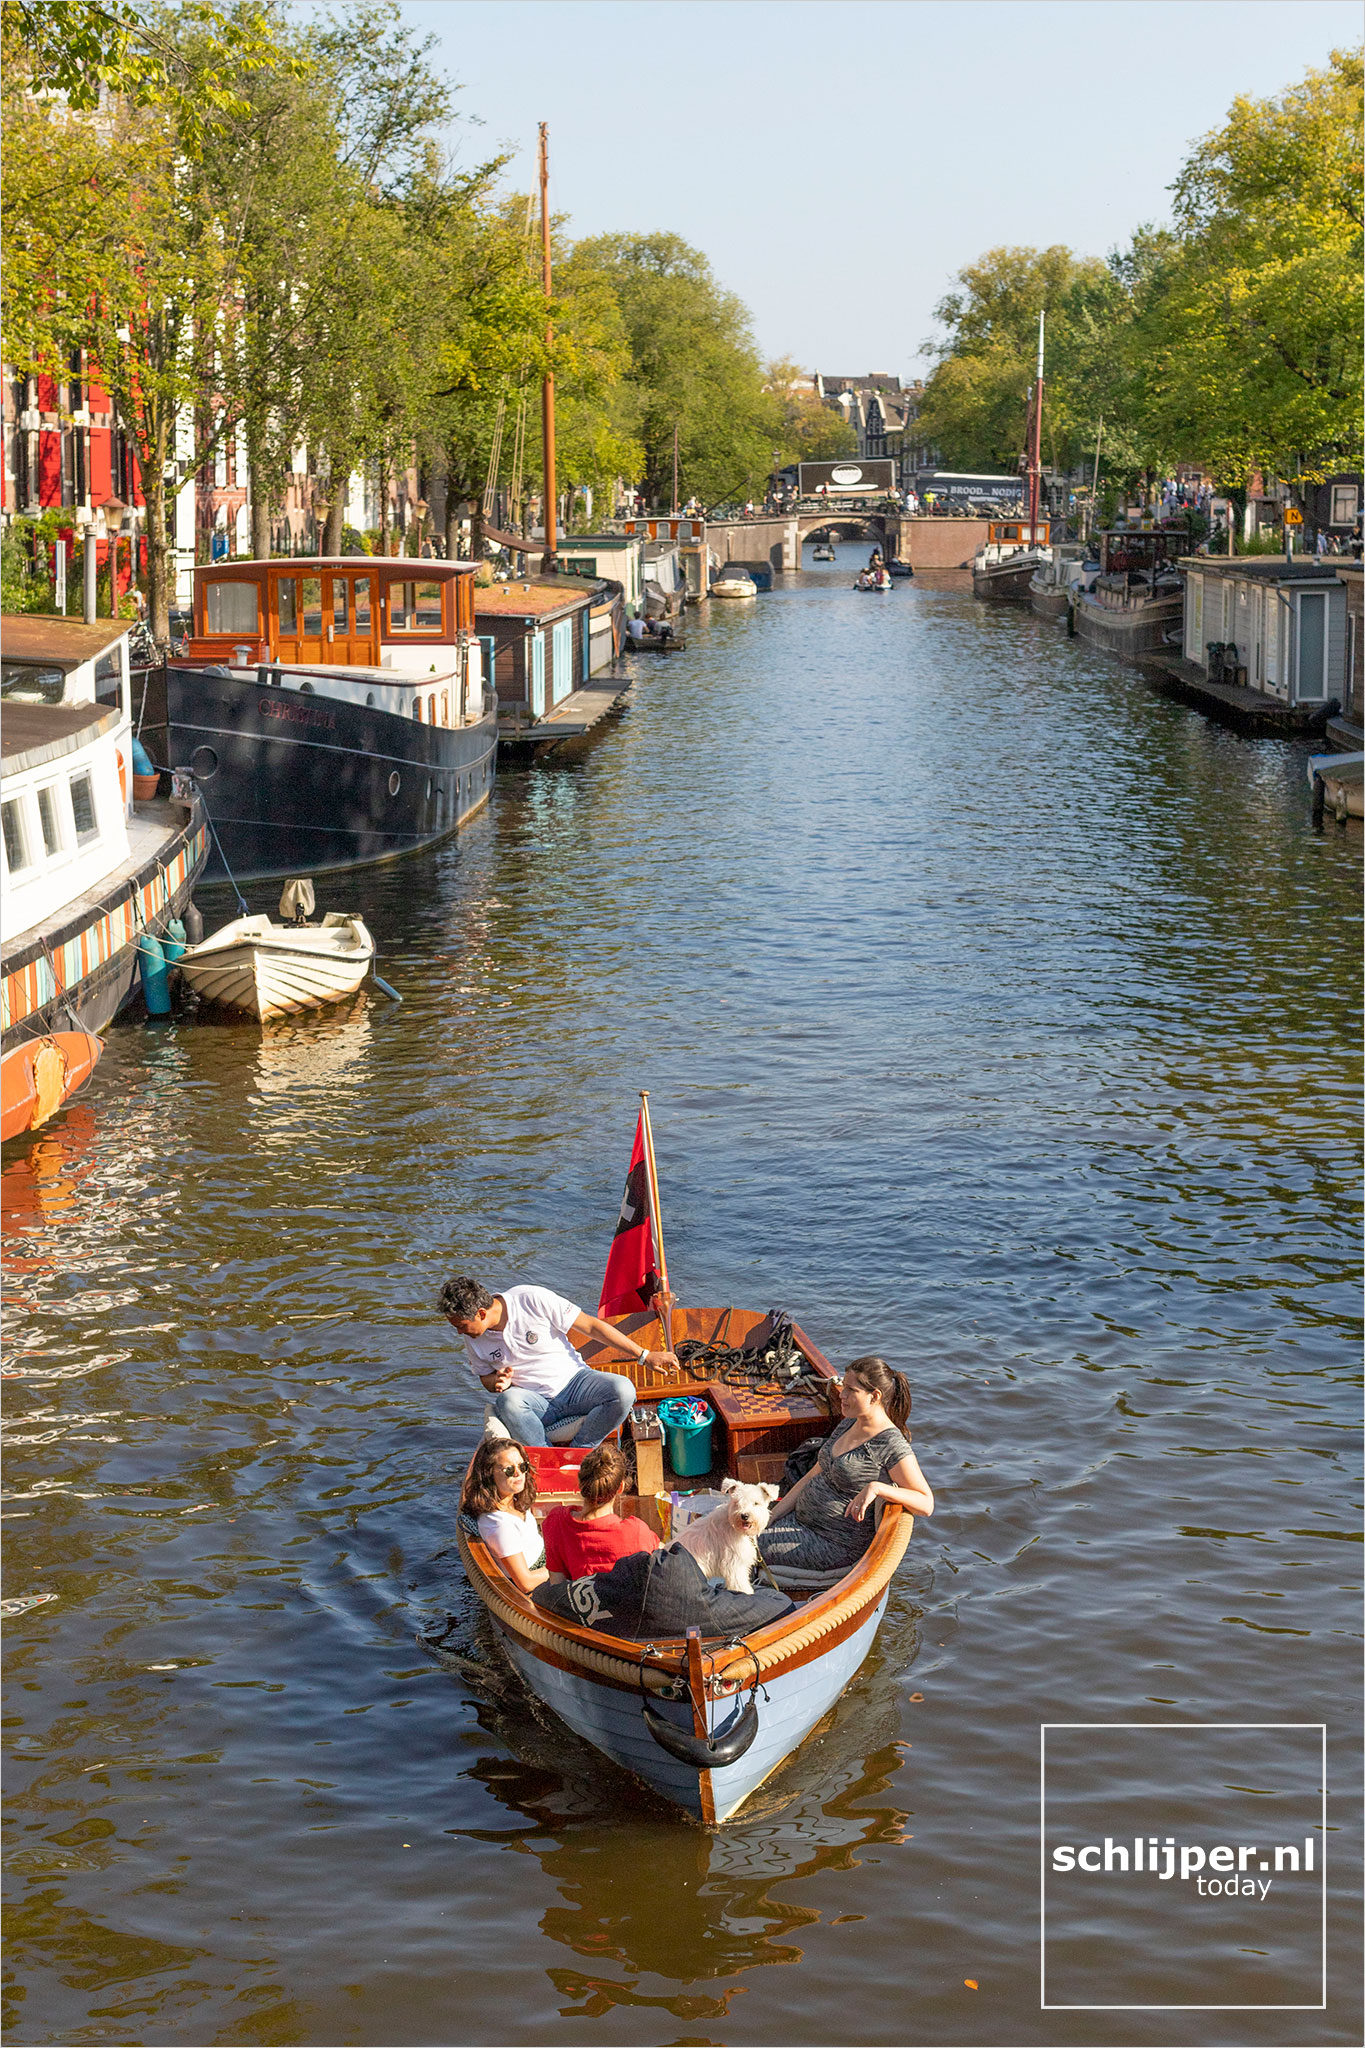 The Netherlands, Amsterdam, 4 september 2021